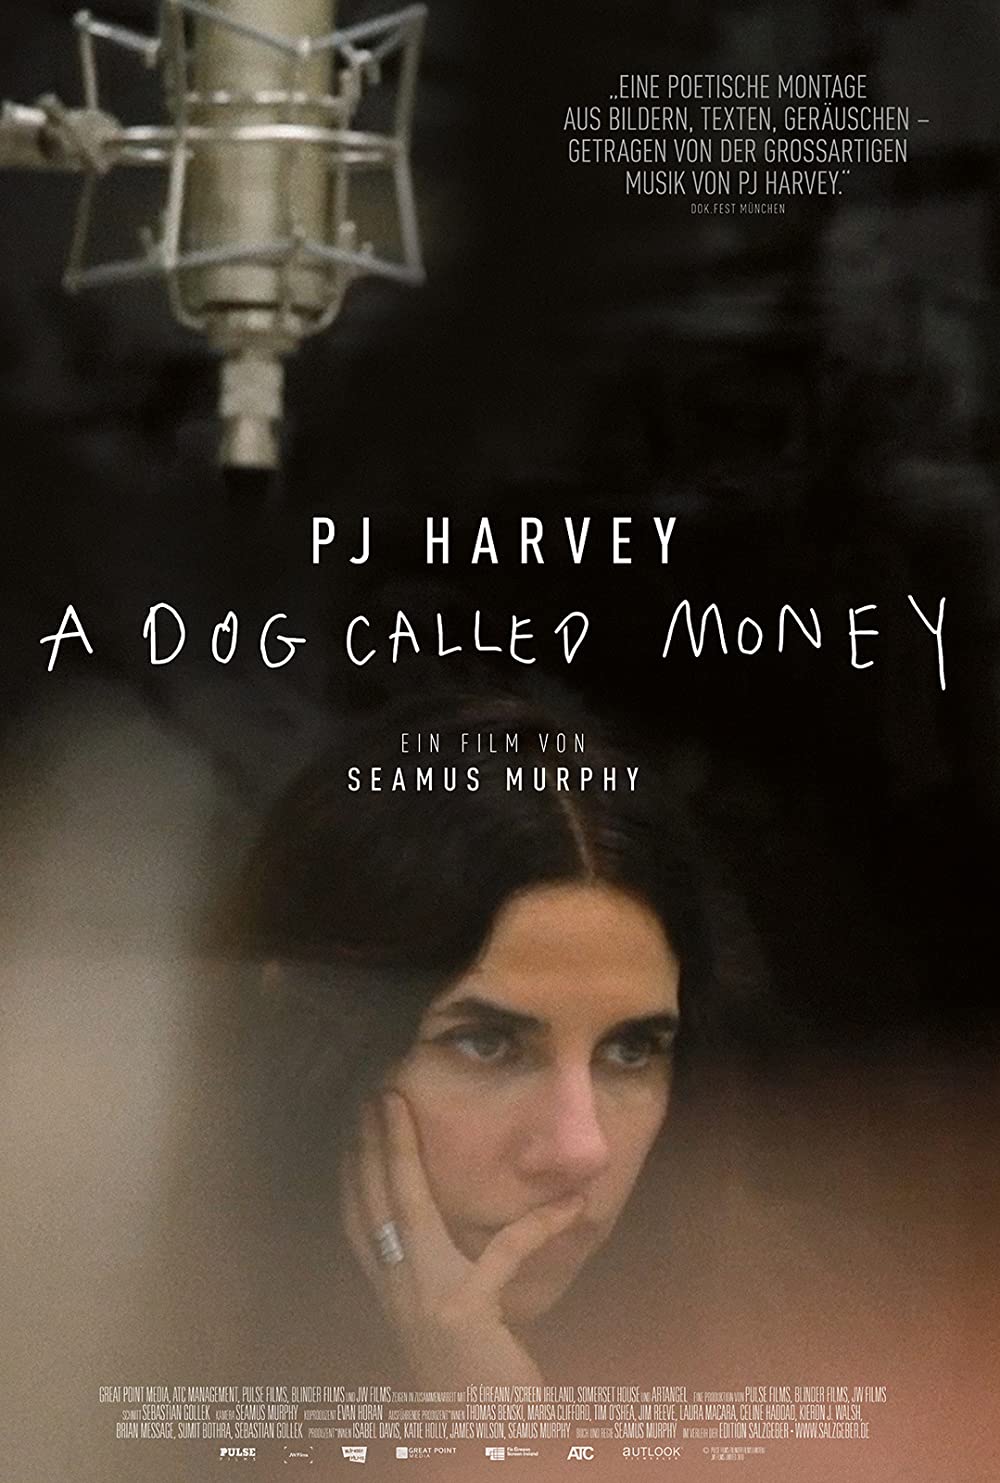 Filmbeschreibung zu PJ Harvey - A Dog called Money